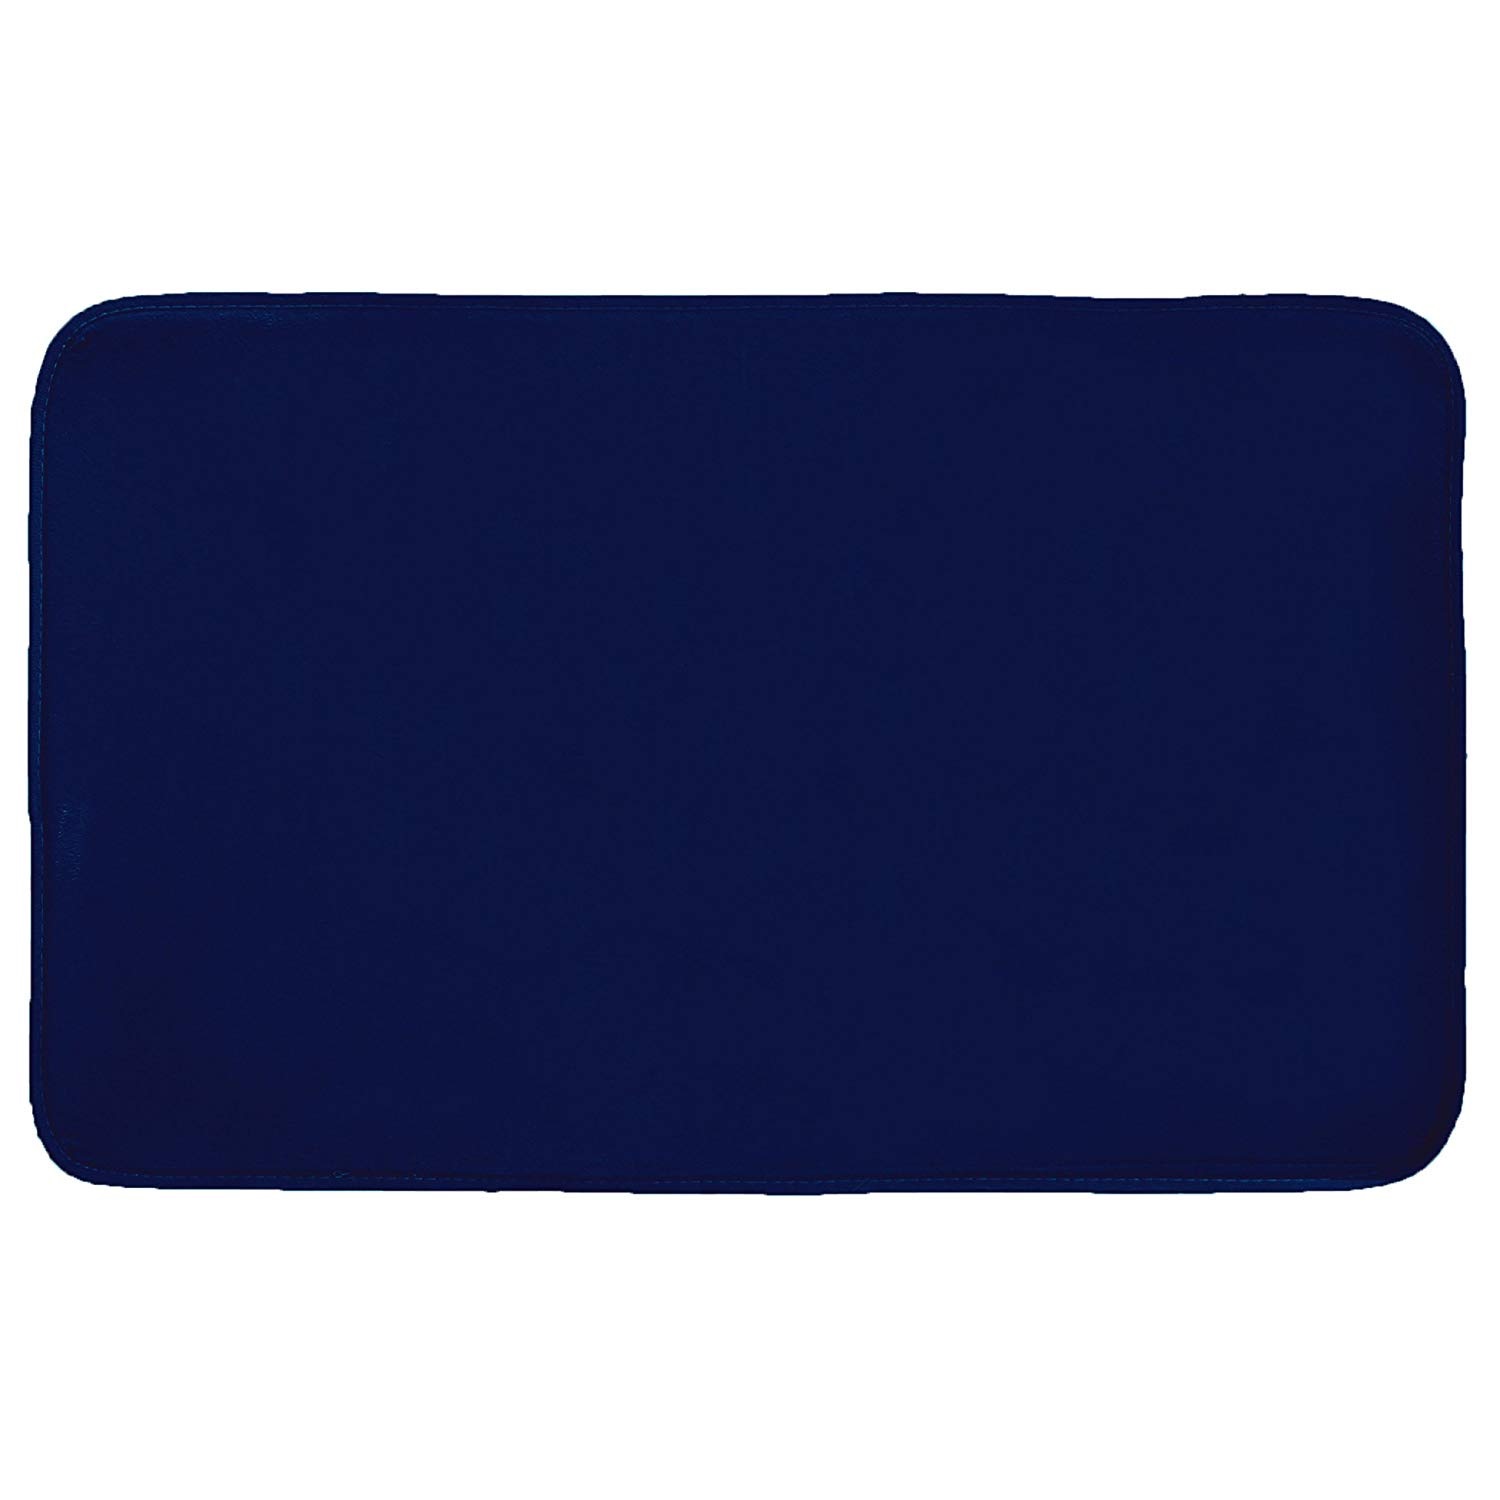 Tapis rectangle velours bleu nuit 50 x 80 cm